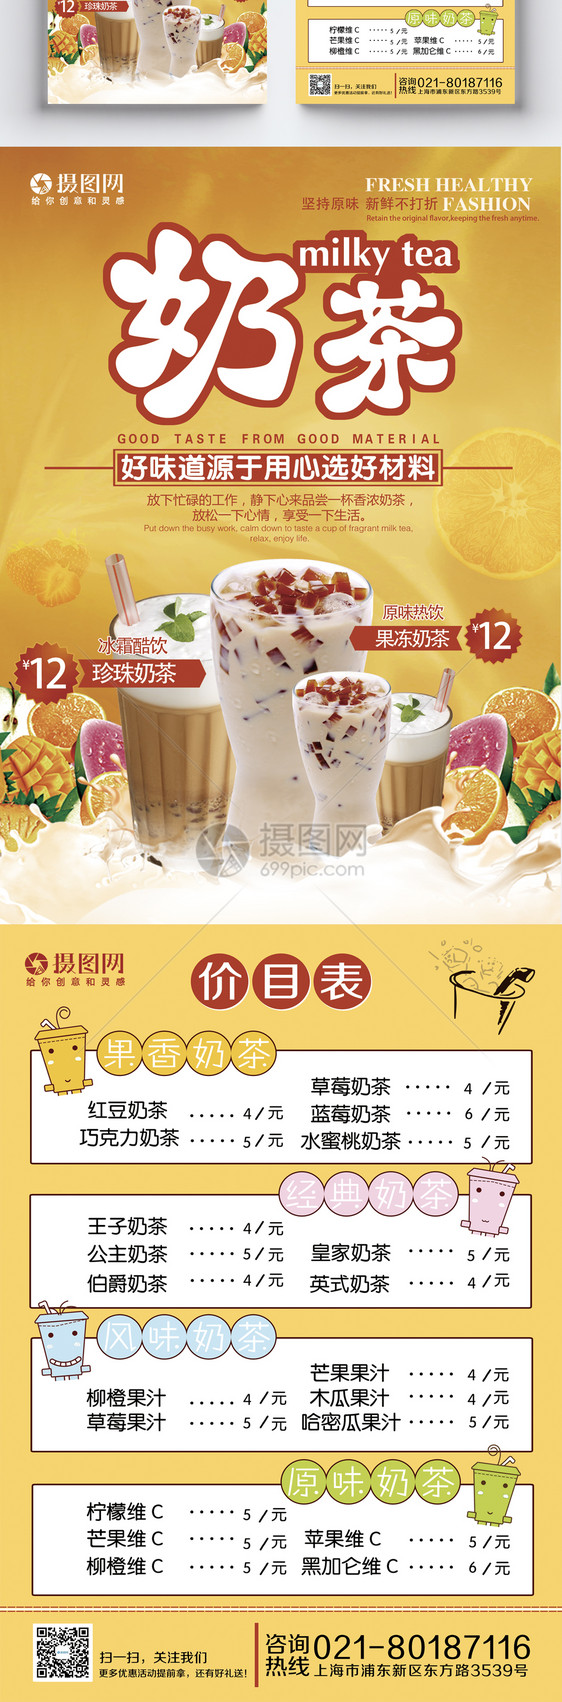 甜品奶茶店宣传单图片